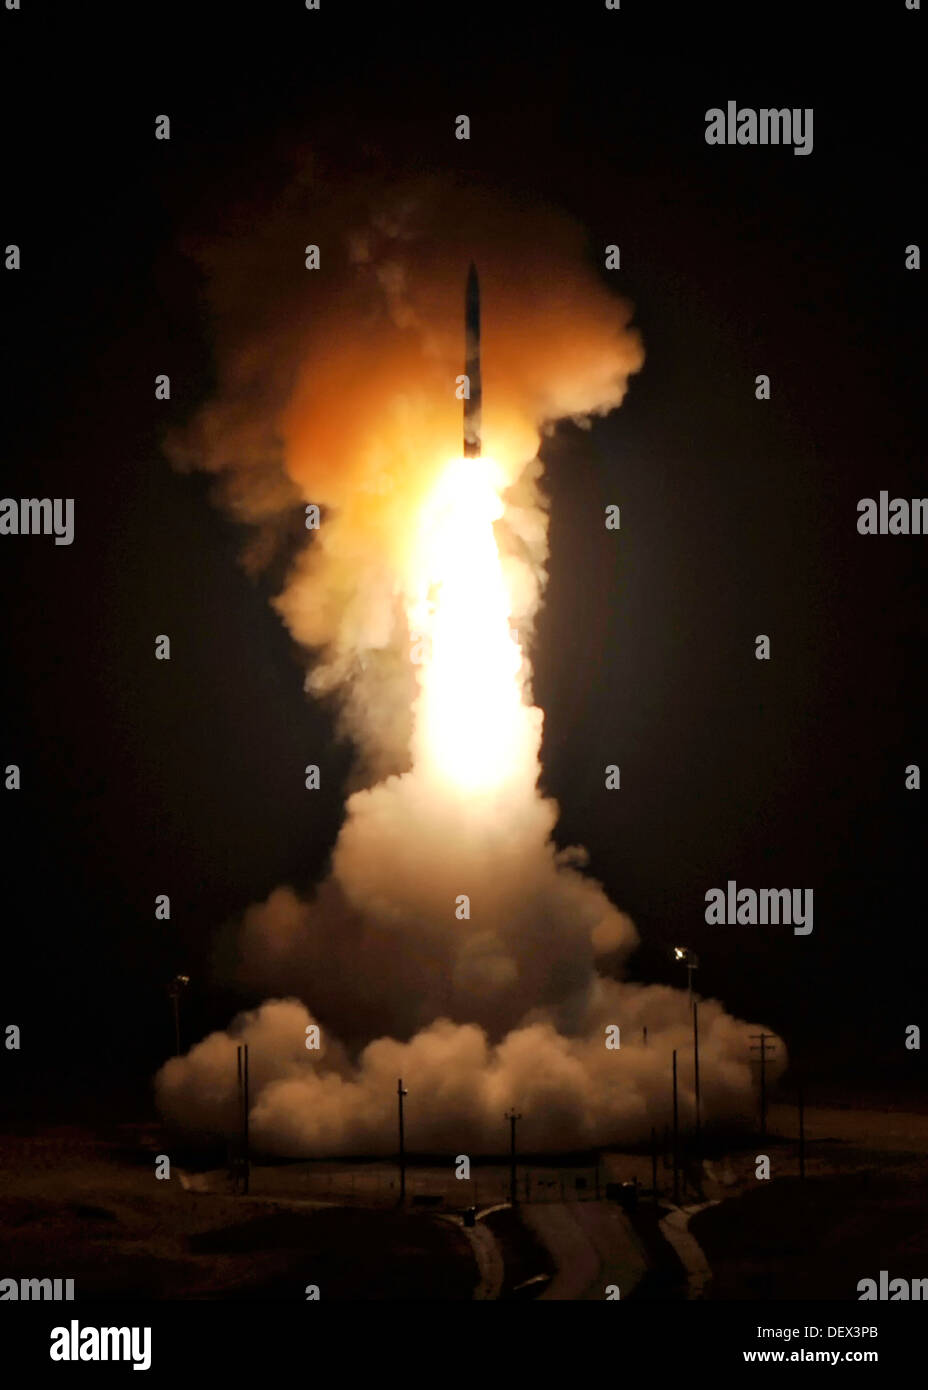 Une armée de l'air Global Strike Command de missiles balistiques intercontinentaux Minuteman III avec une ogive simulée est lancé au cours d'un essai de fonctionnement à 22 septembre 2013 à partir de la rampe de lancement 10 Vandenberg, CA. Banque D'Images